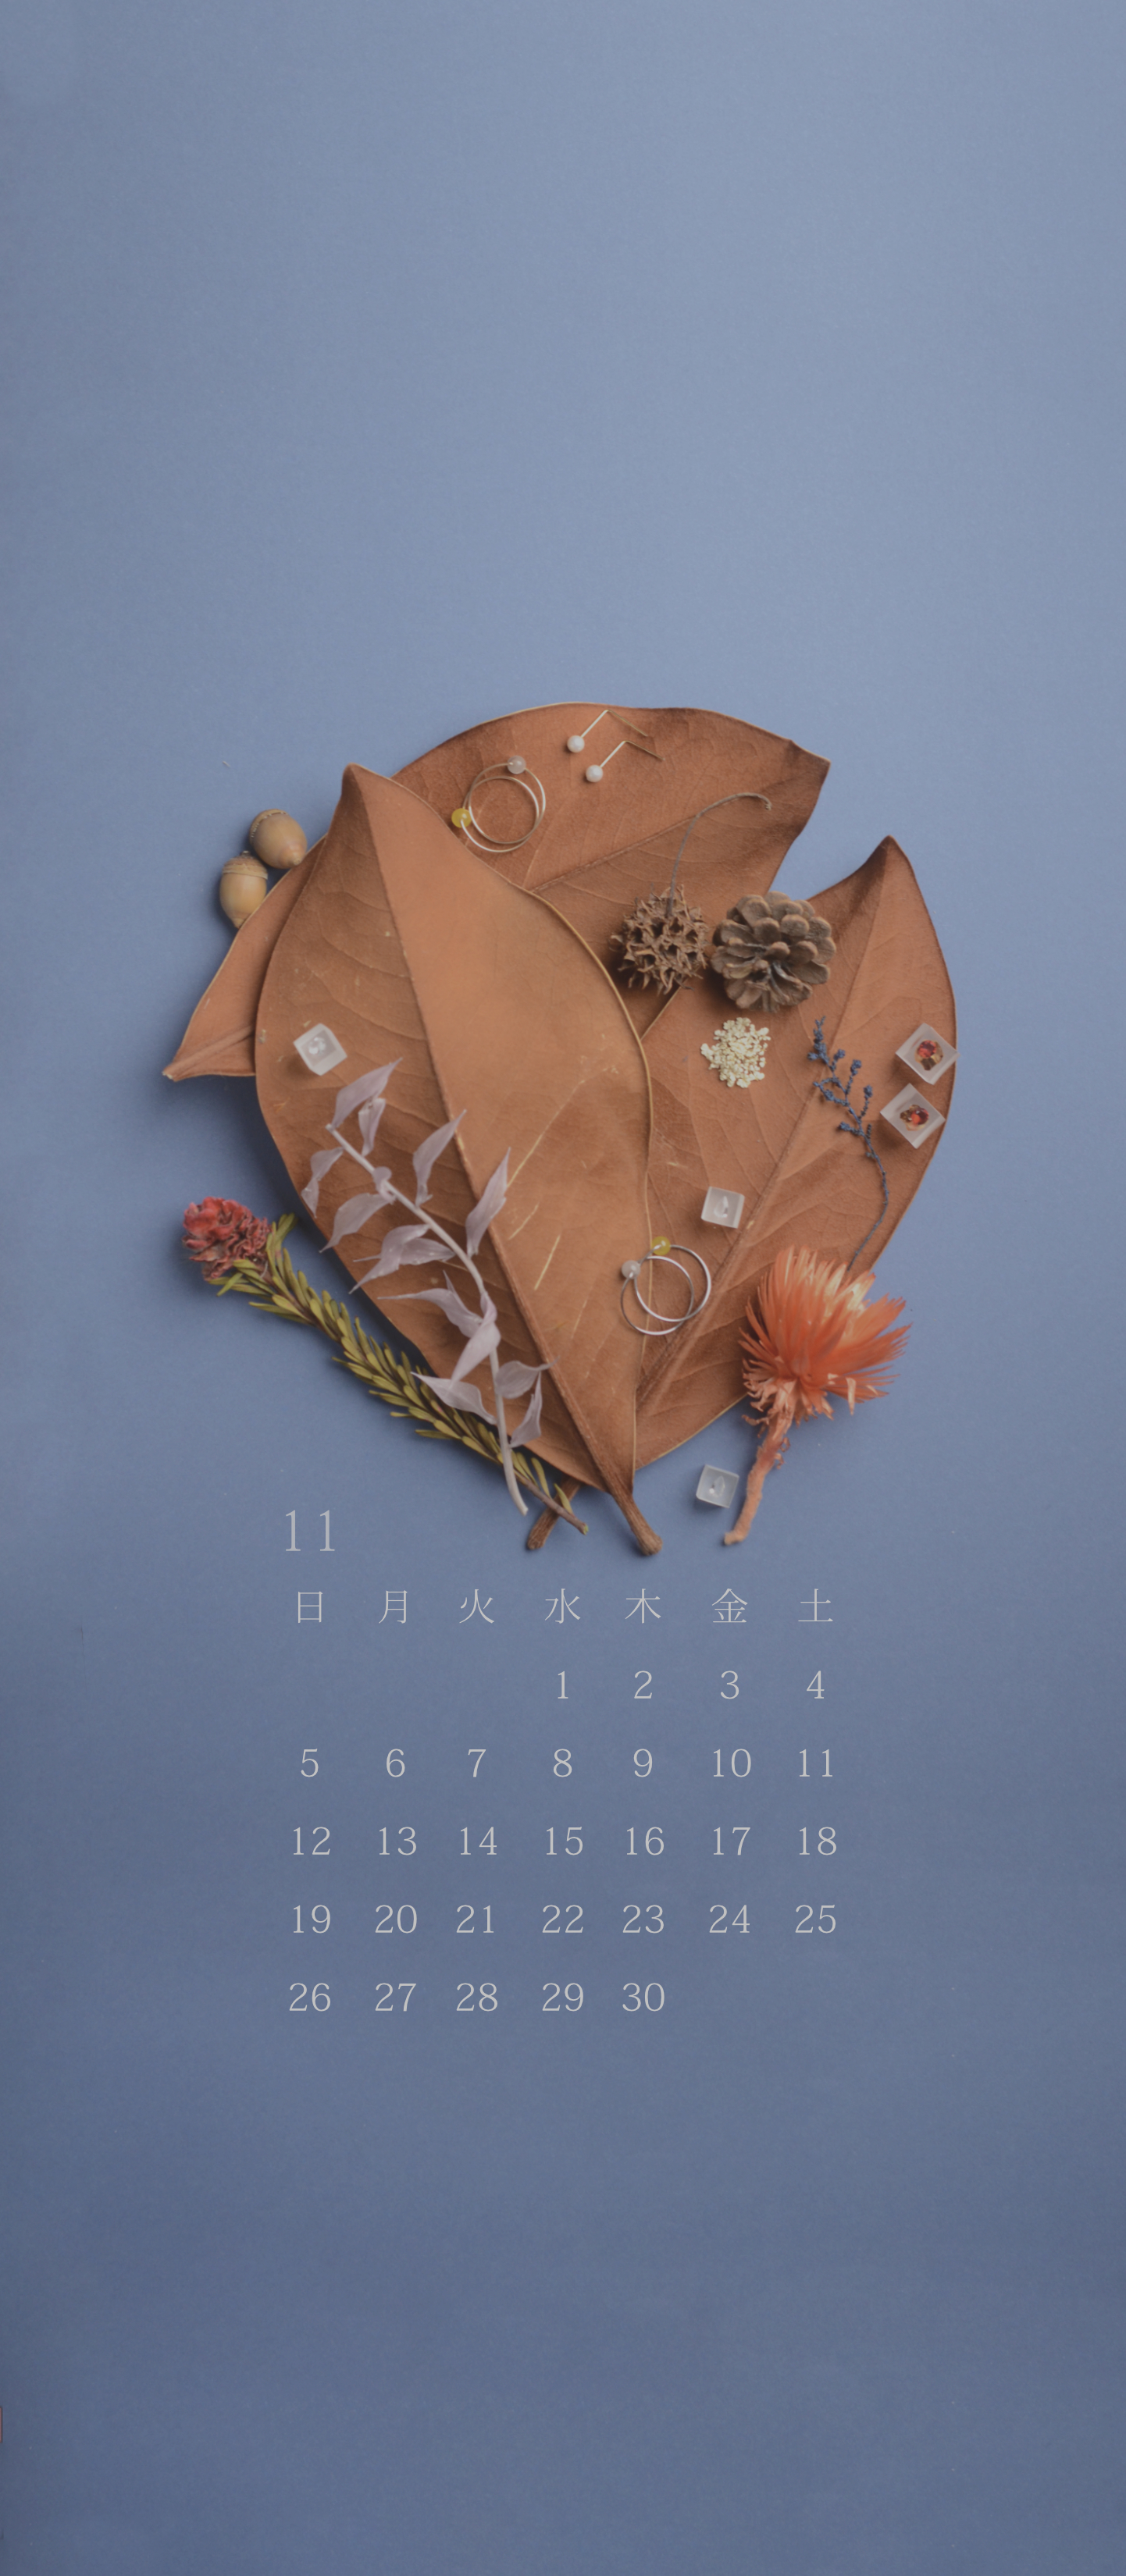 無料スマホカレンダー 「11月 落ち葉の宇宙」